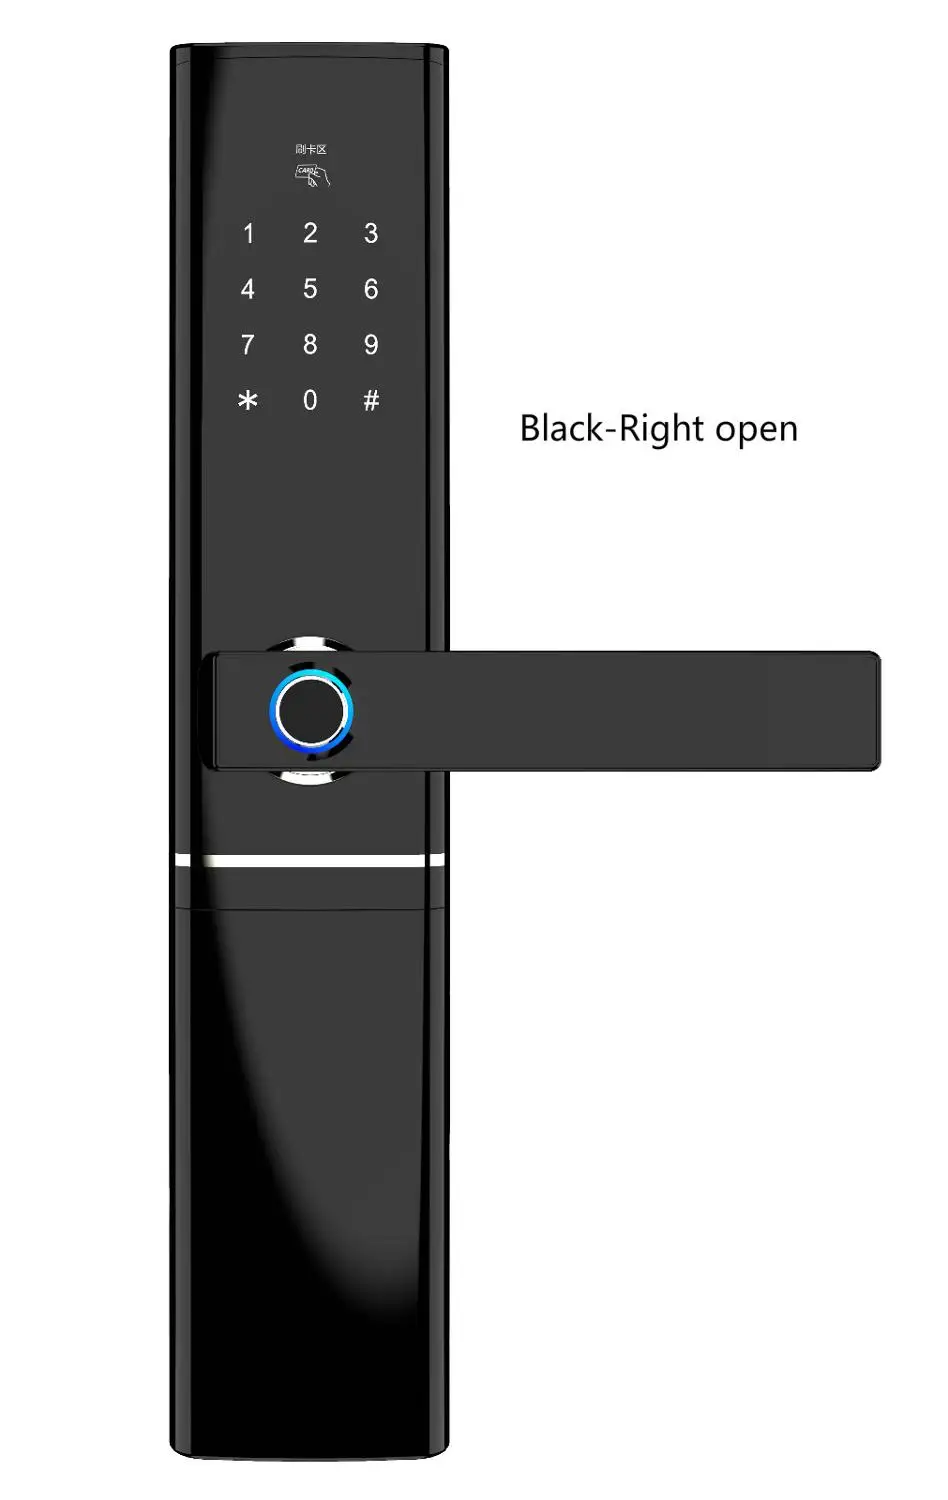 CARDORIA Biometri отпечатков пальцев умный дверной замок умный электронный замок проверка отпечатков пальцев с карта паролей приложение разблокировка - Цвет: Black-Right open